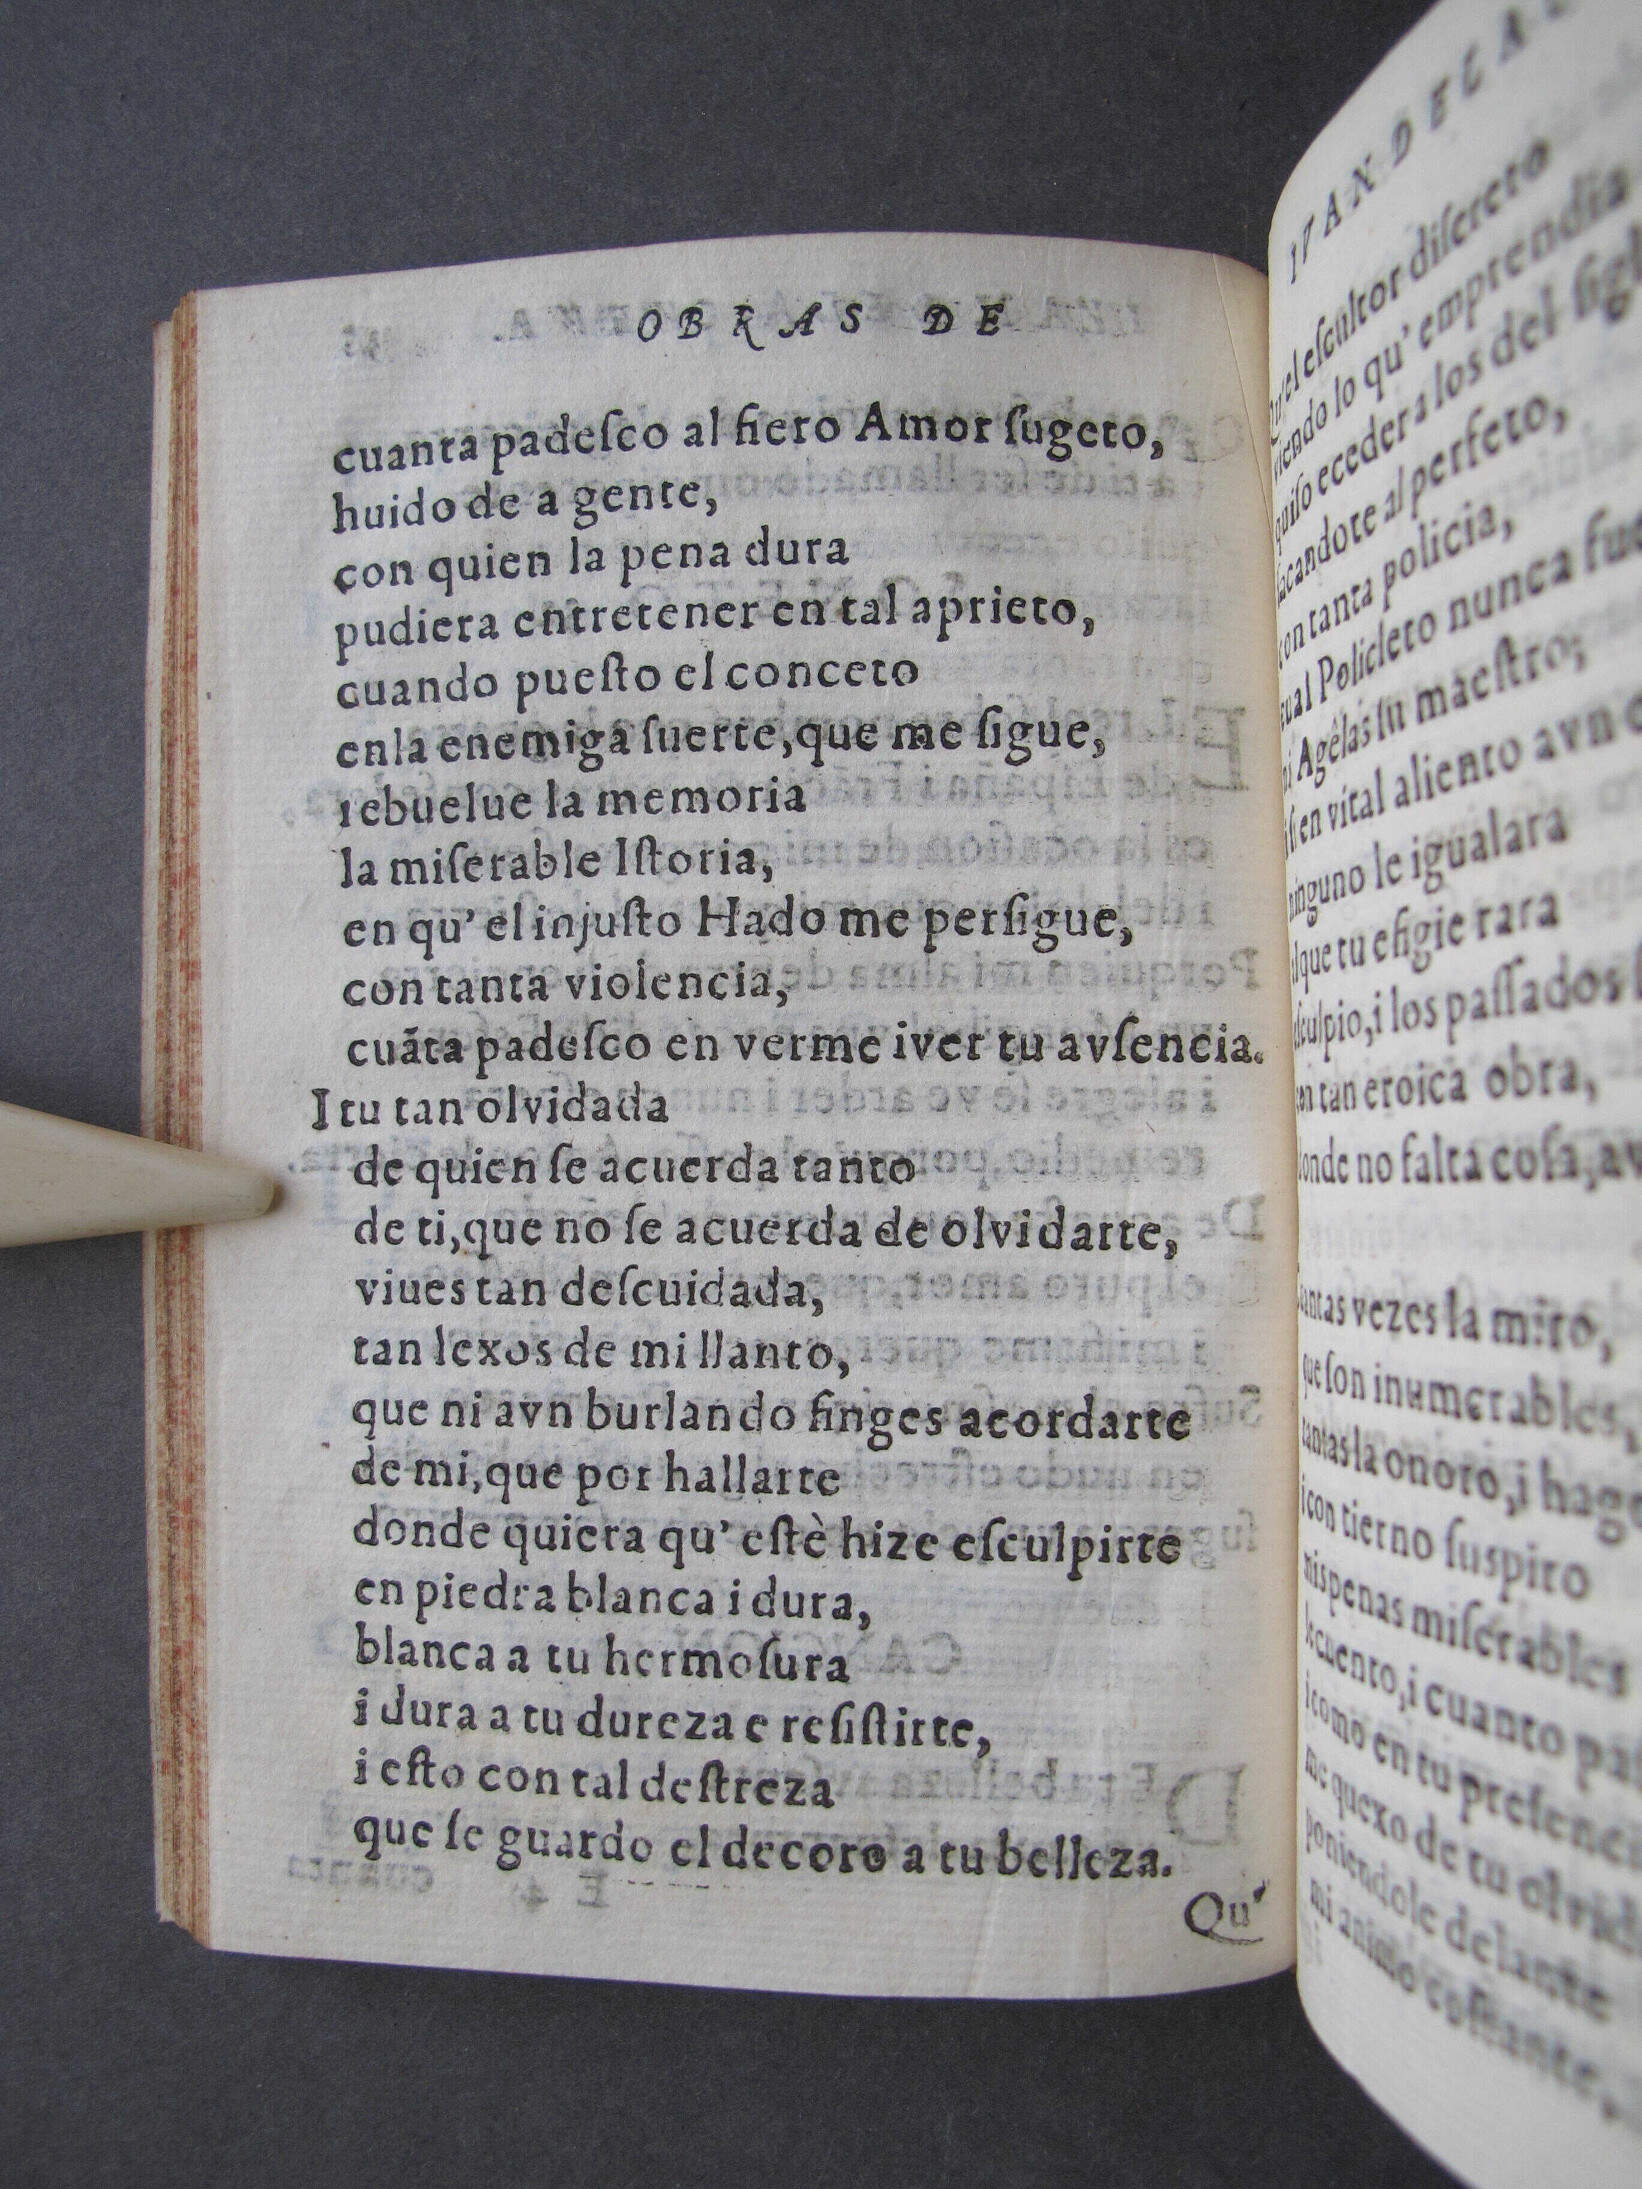 Folio E4 verso